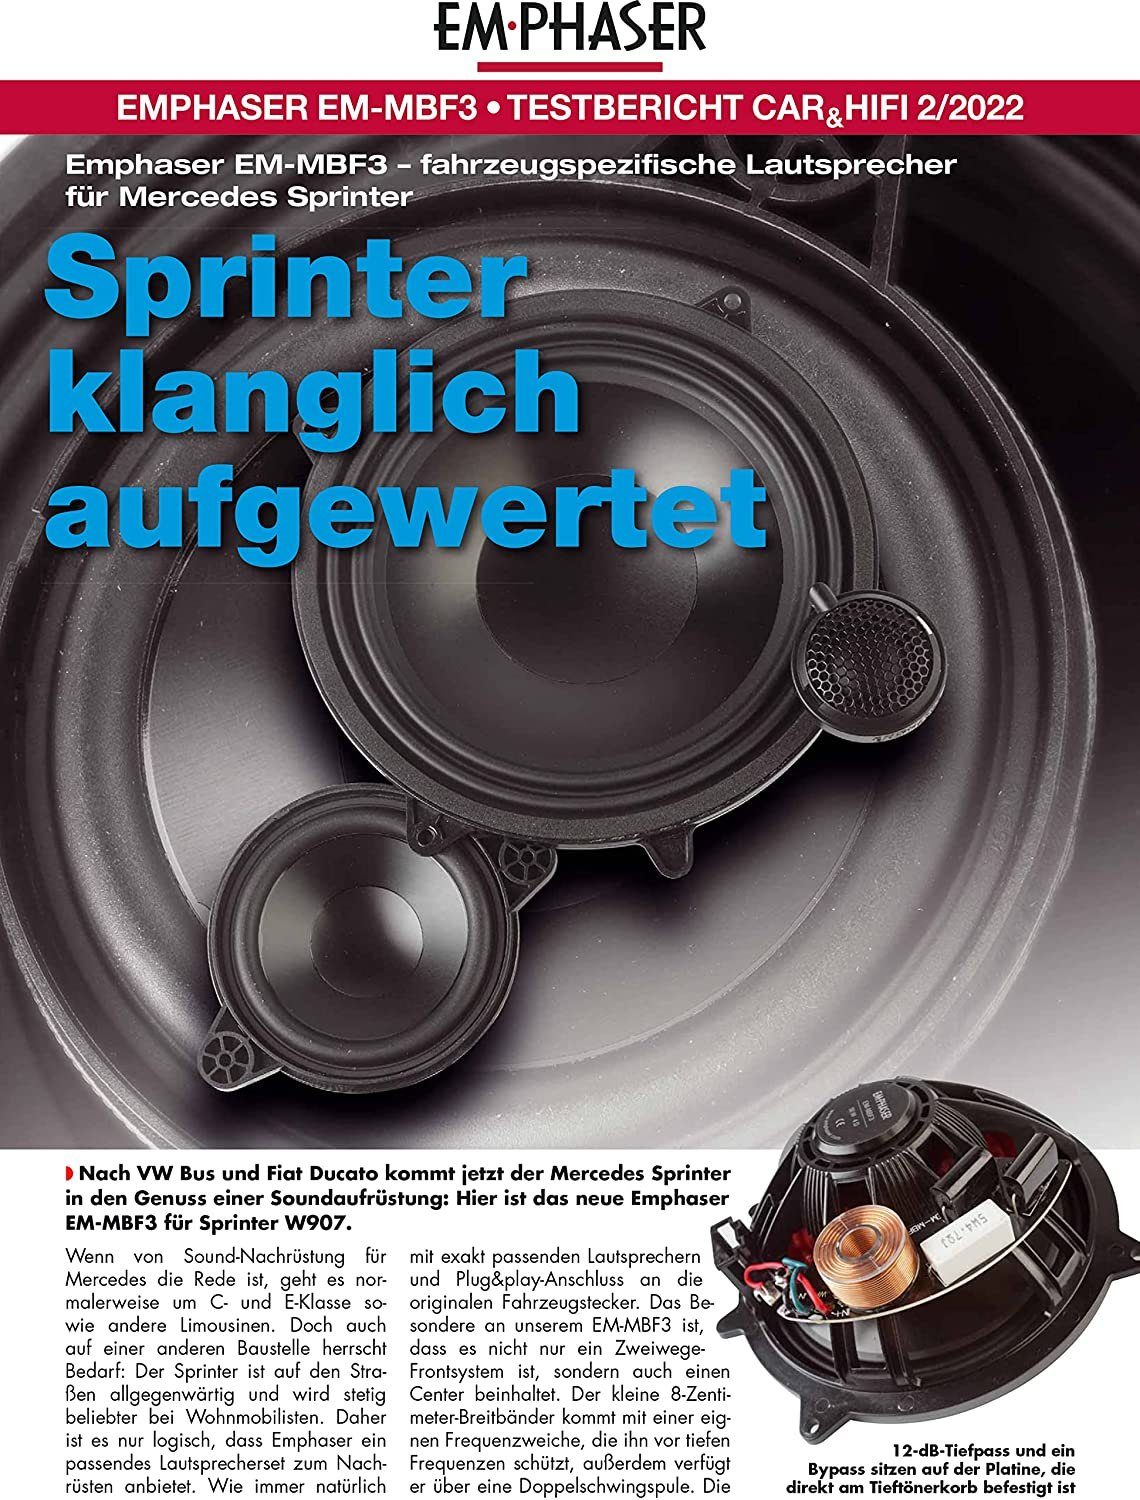 Auto-Lautsprecher Sprinter 2.1 Emphaser für Lautsprecher MBF3 Mercedes EmPhaser